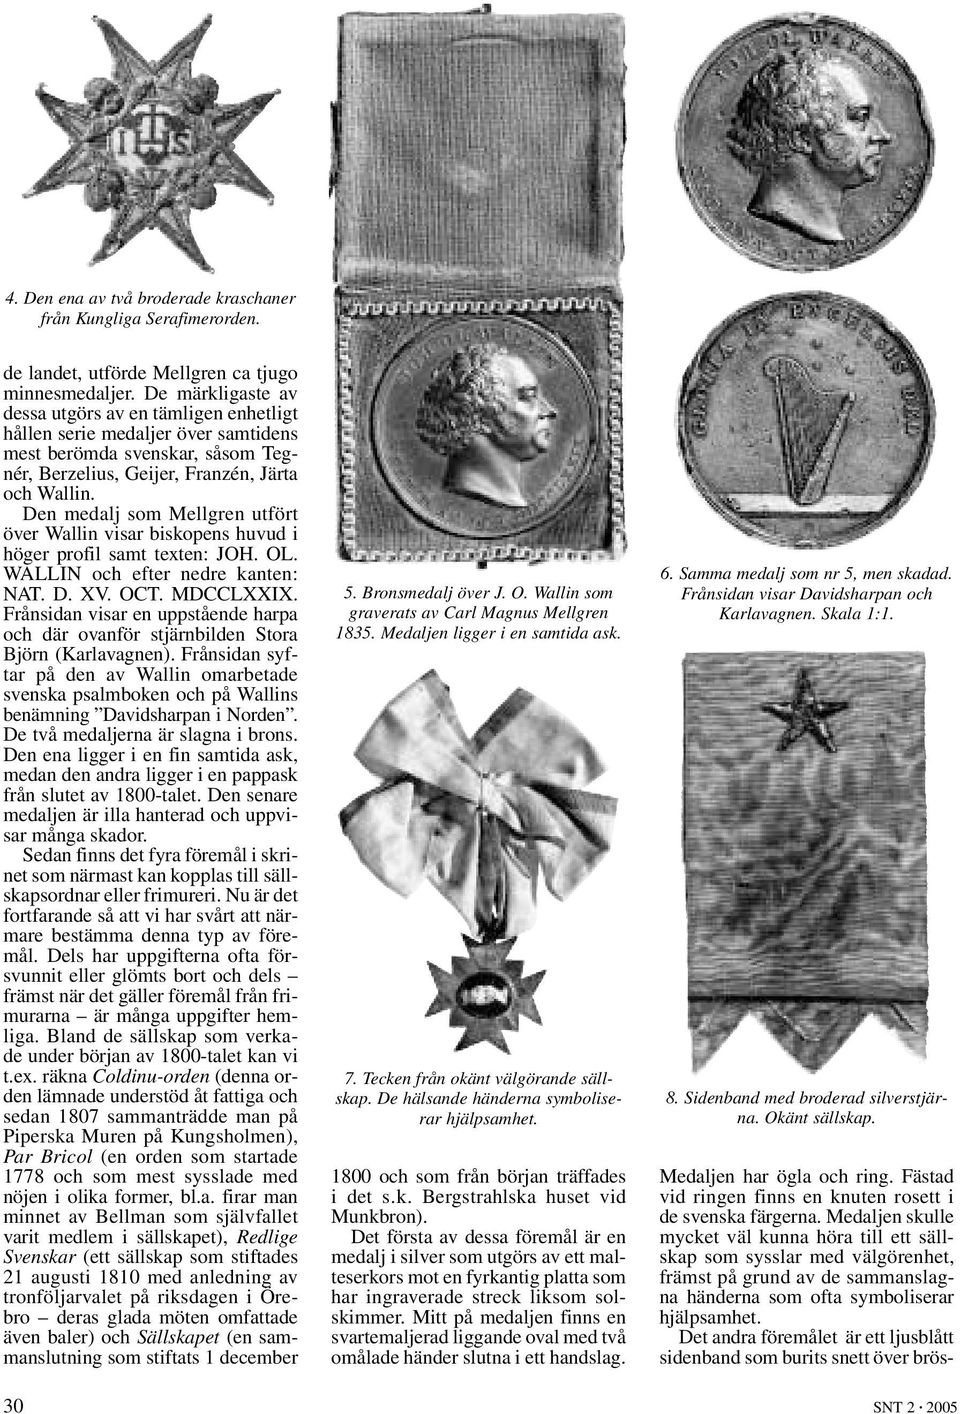 Den medalj som Mellgren utfört över Wallin visar biskopens huvud i höger profil samt texten: JOH. OL. WALLIN och efter nedre kanten: NAT. D. XV. OCT. MDCCLXXIX.